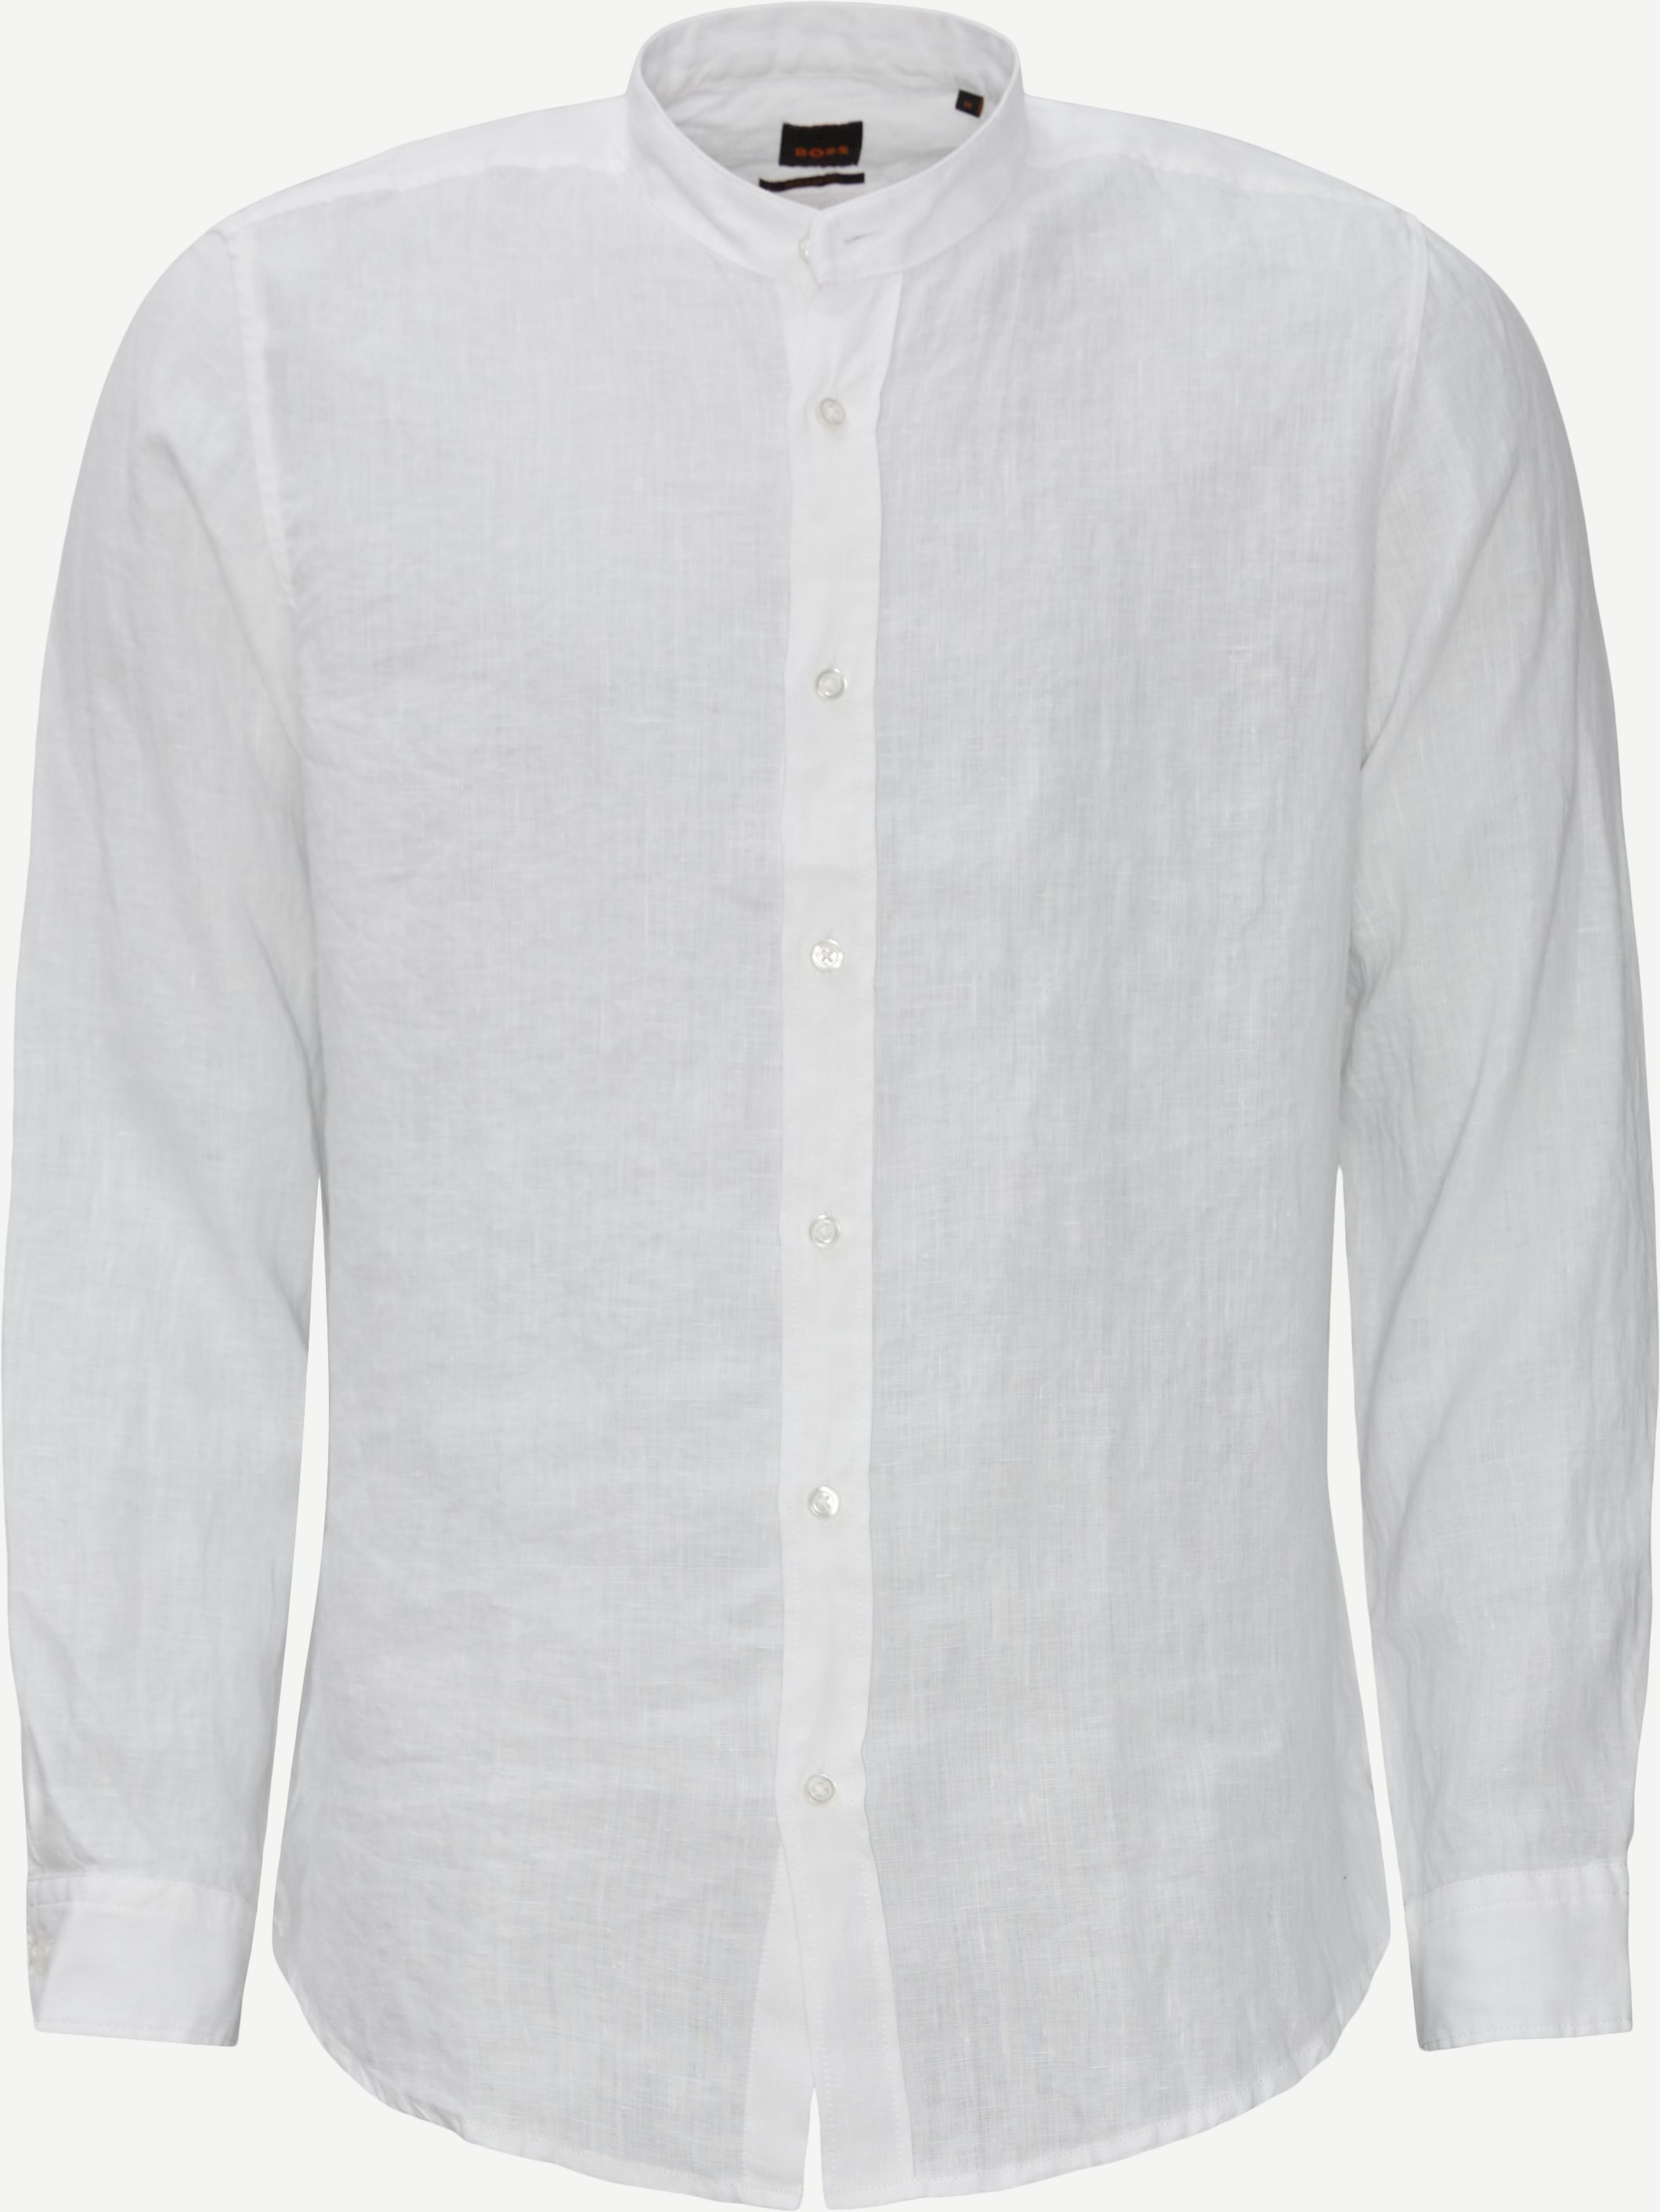 Shirts - Regular fit - White